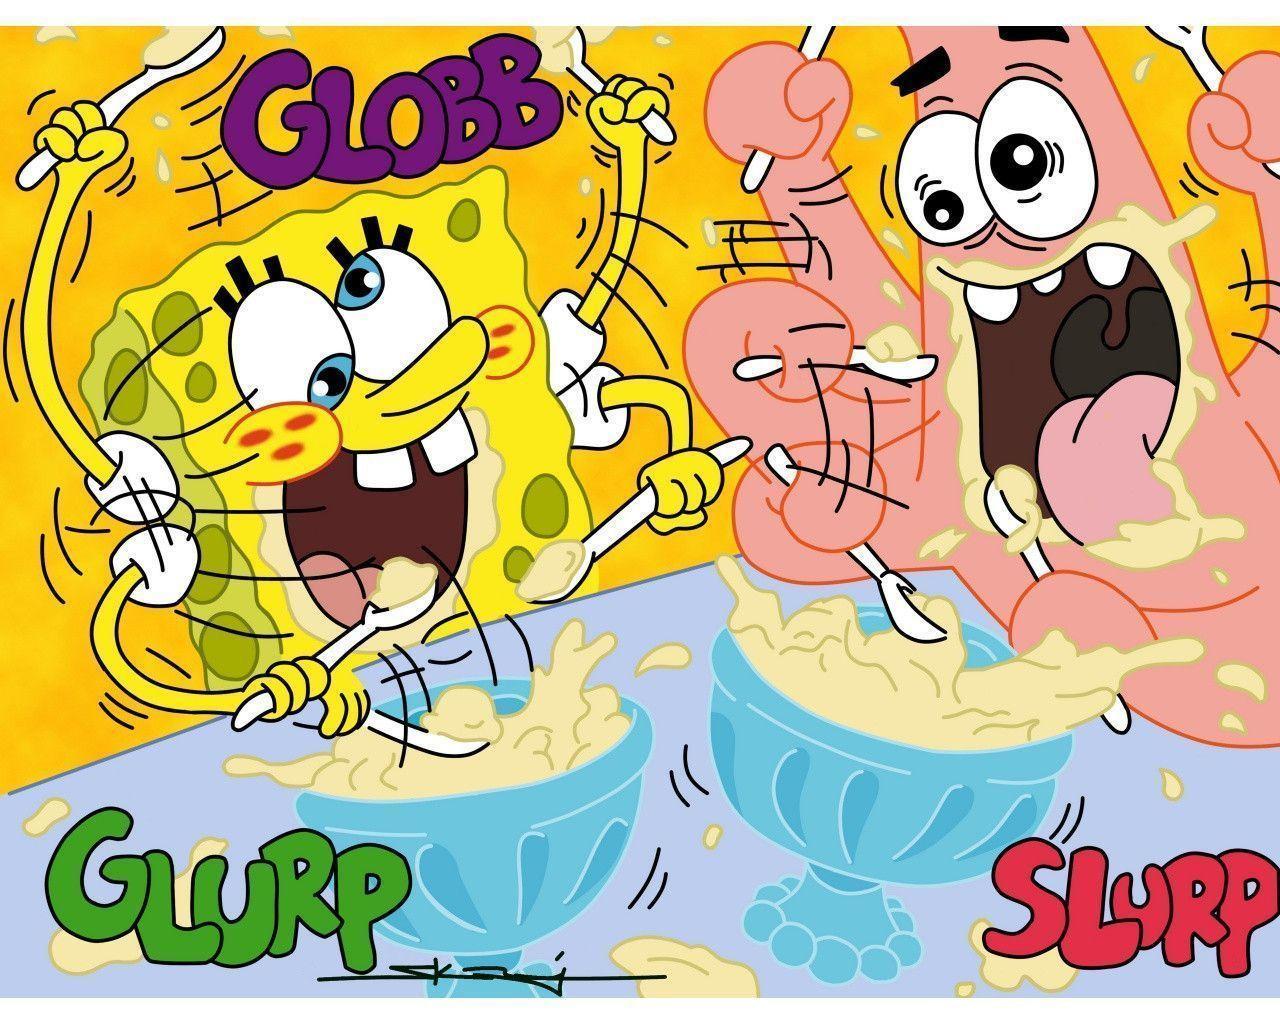 Spongebob Squarepants and Patrick Star Wallpaper